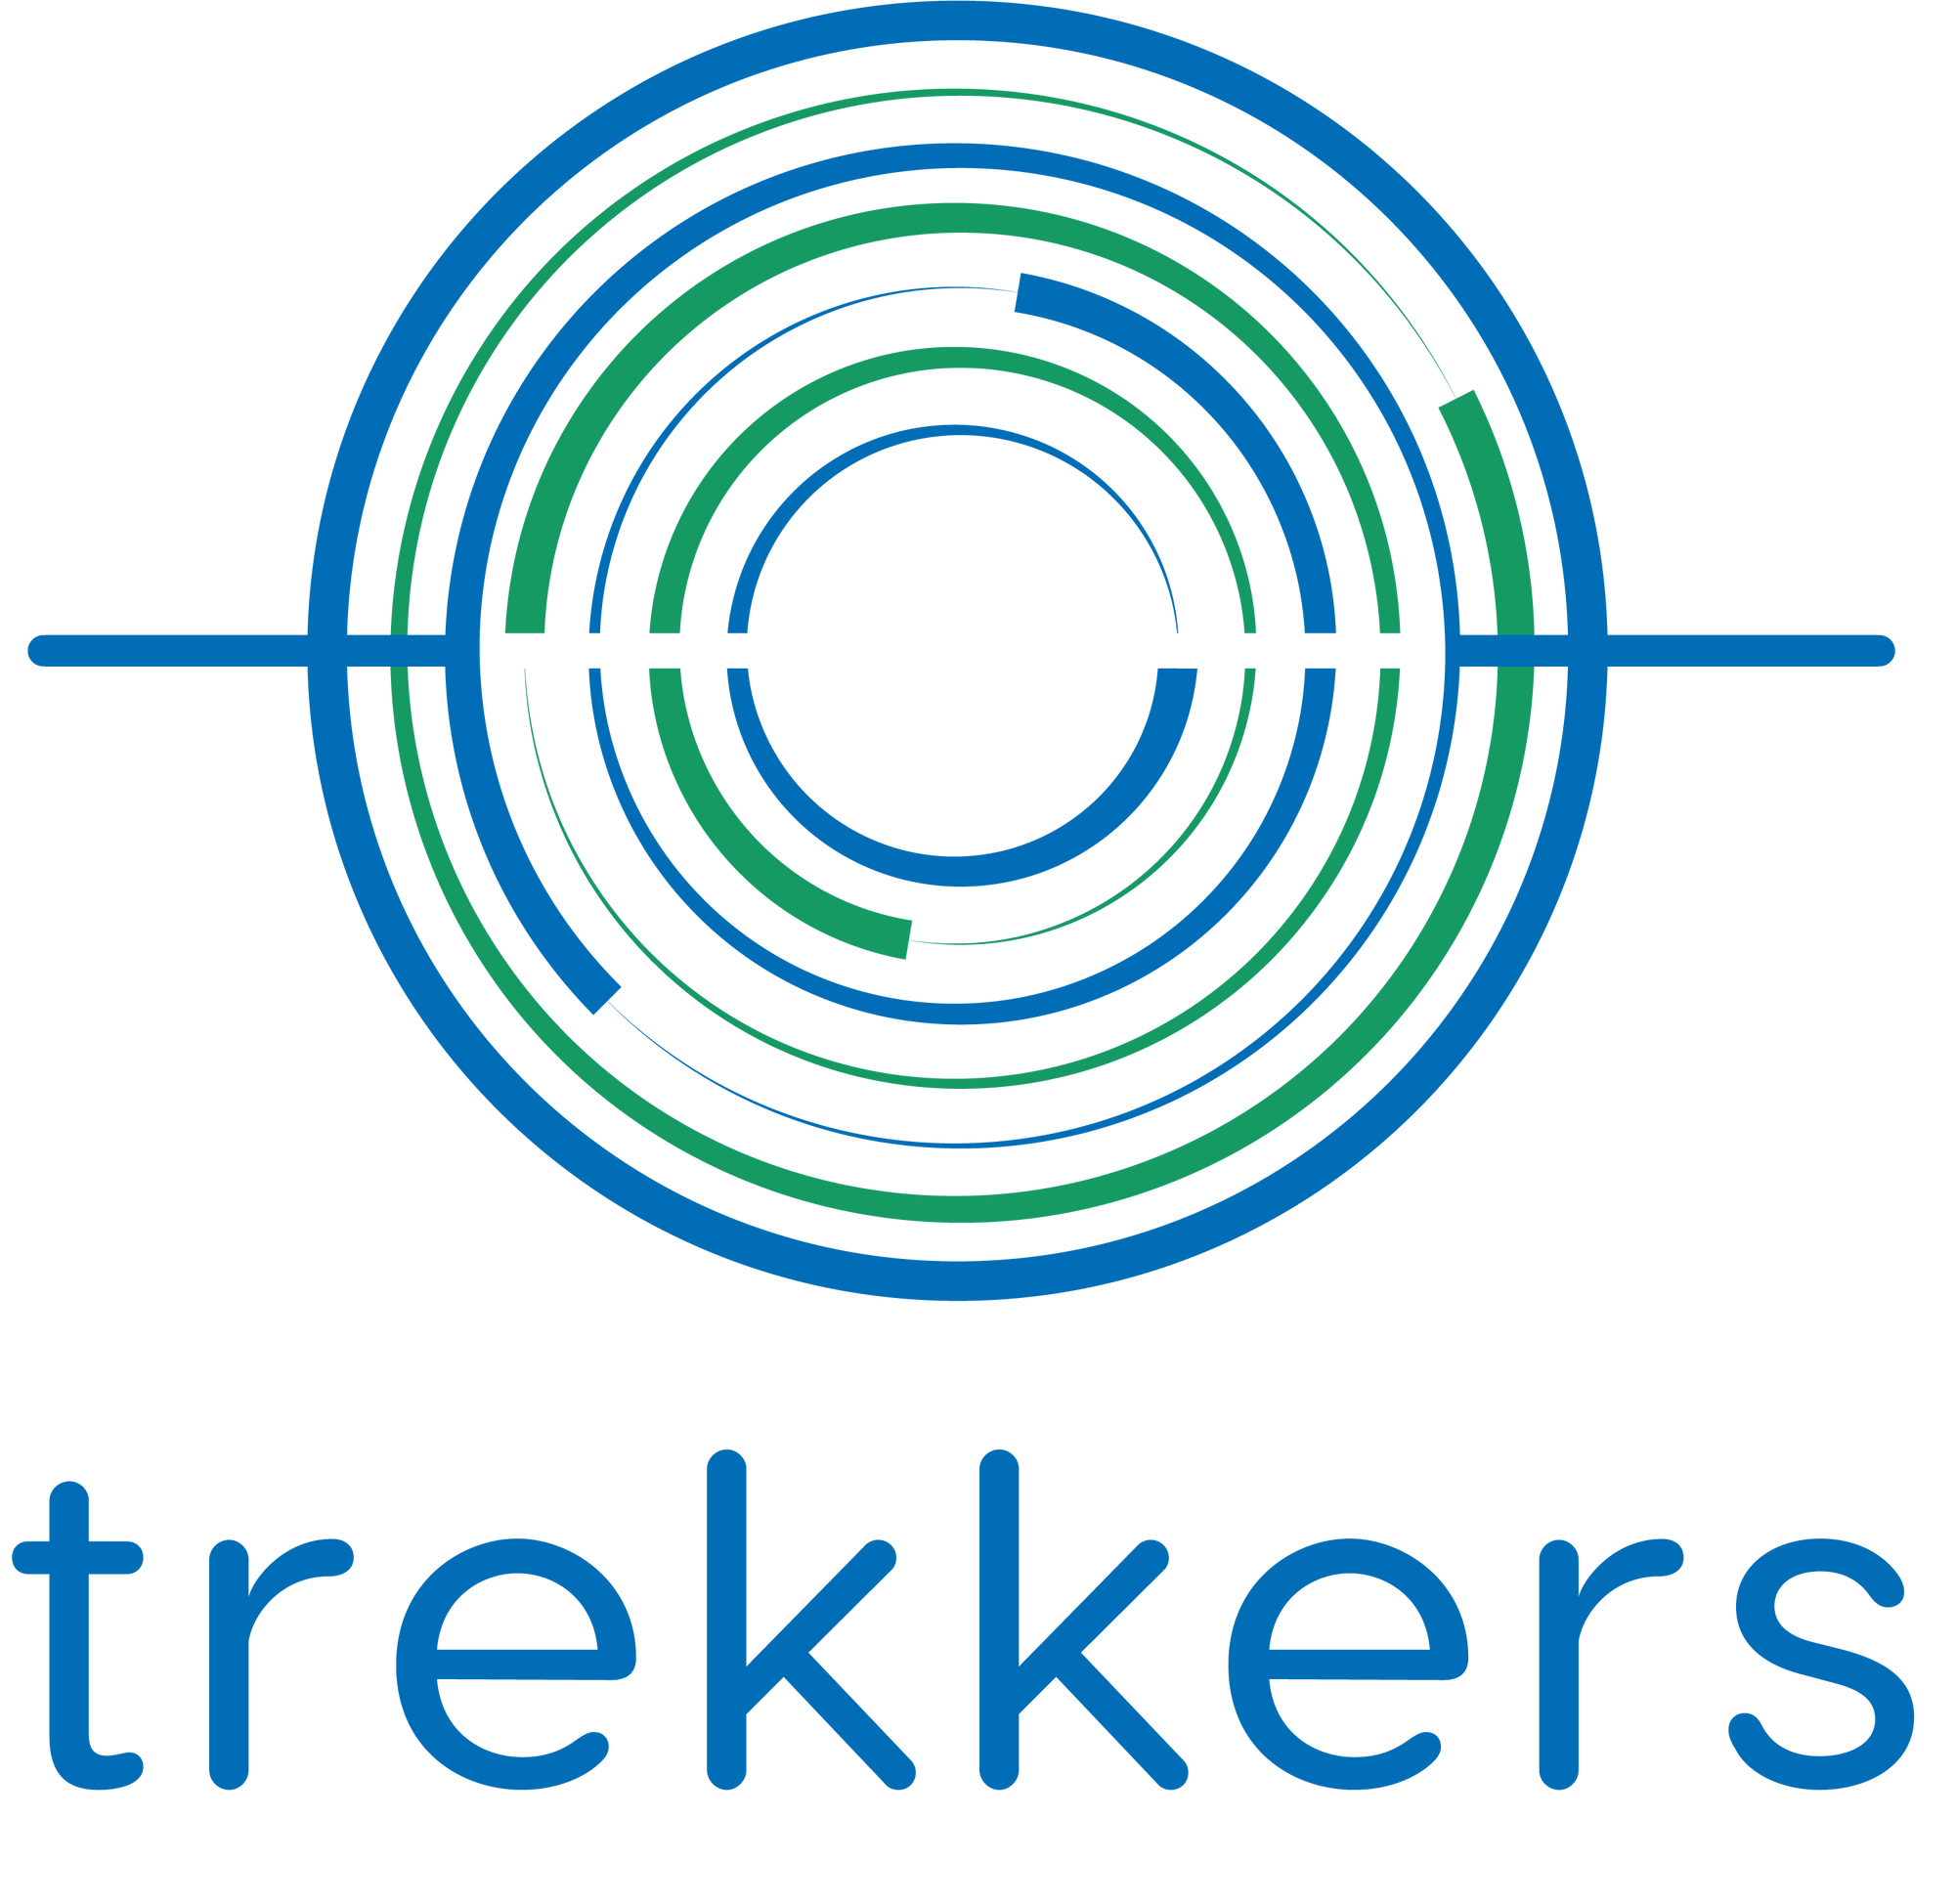 Trekkers Fundraising Partnership